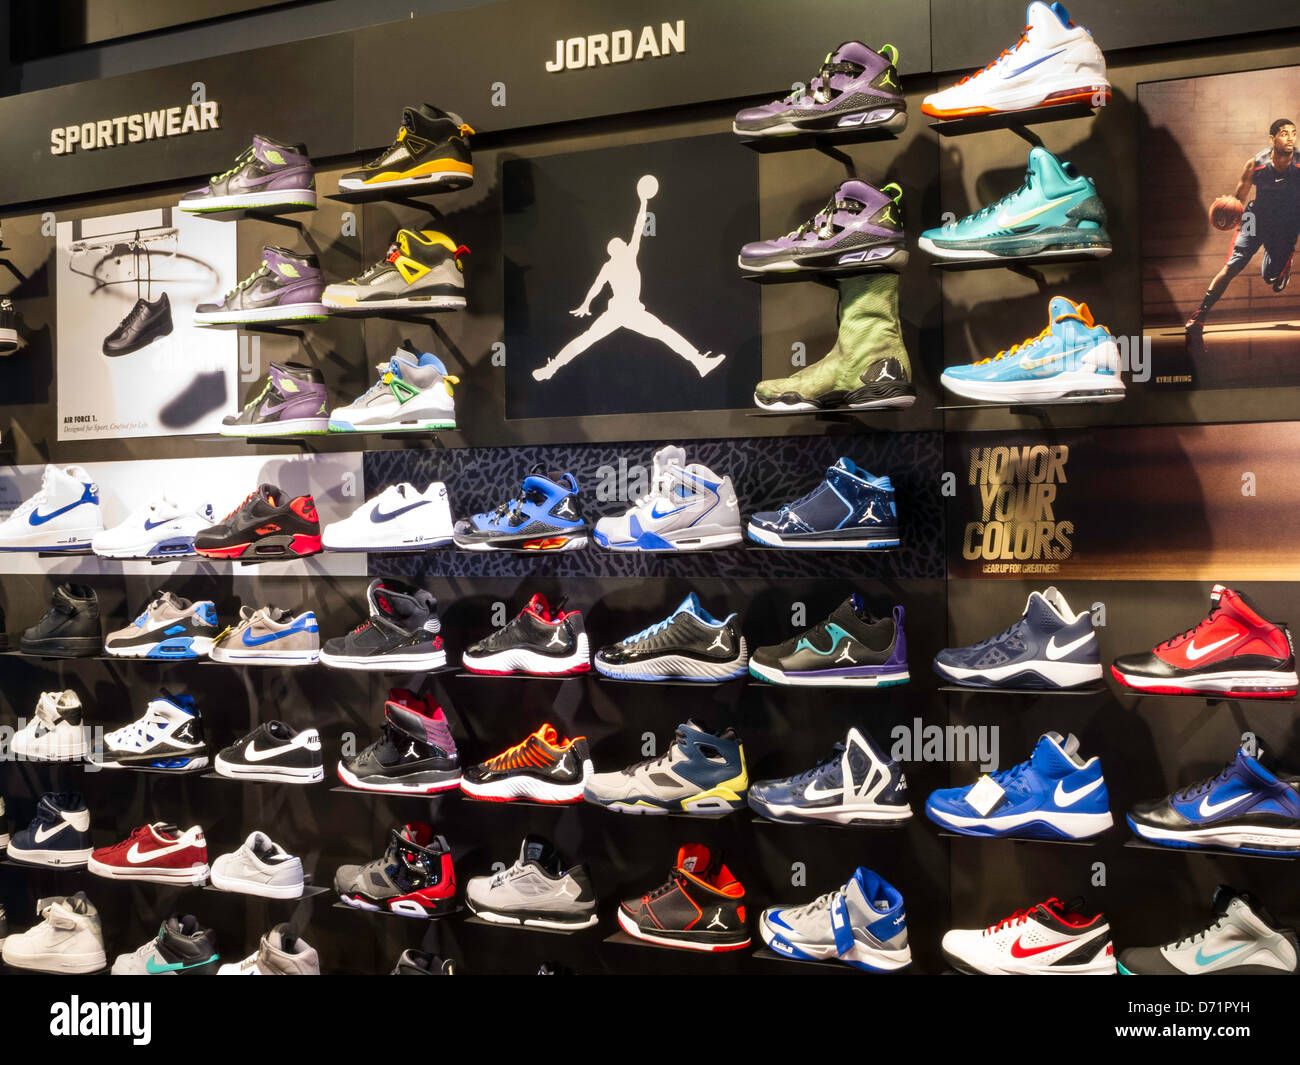 Parete con calzature sportive, scarpe Nike con logo Swoosh, interni del  negozio di articoli sportivi Modell's, New York Foto stock - Alamy